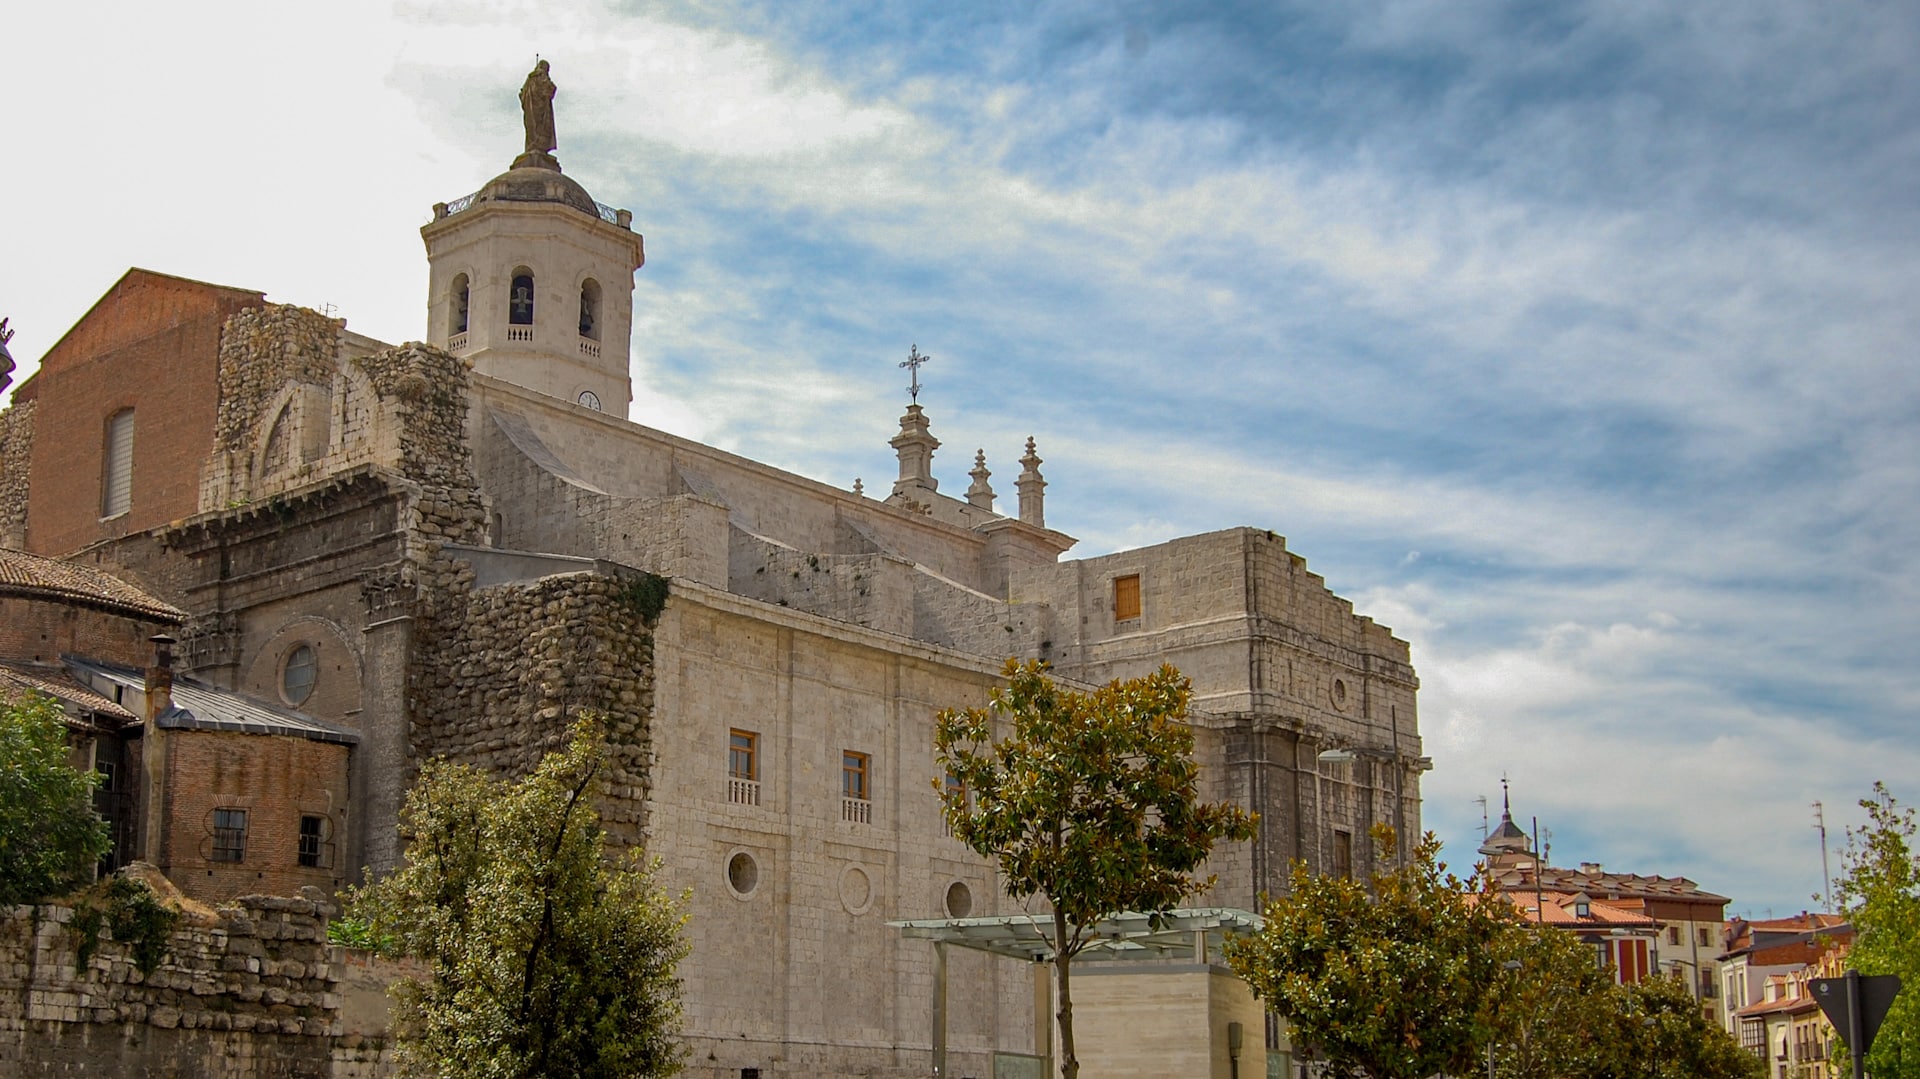 El casco antiguo de Valladolid es el corazón histórico y cultural de la ciudad, caracterizado por sus pintorescas calles empedradas y su arquitectura tradicional española.